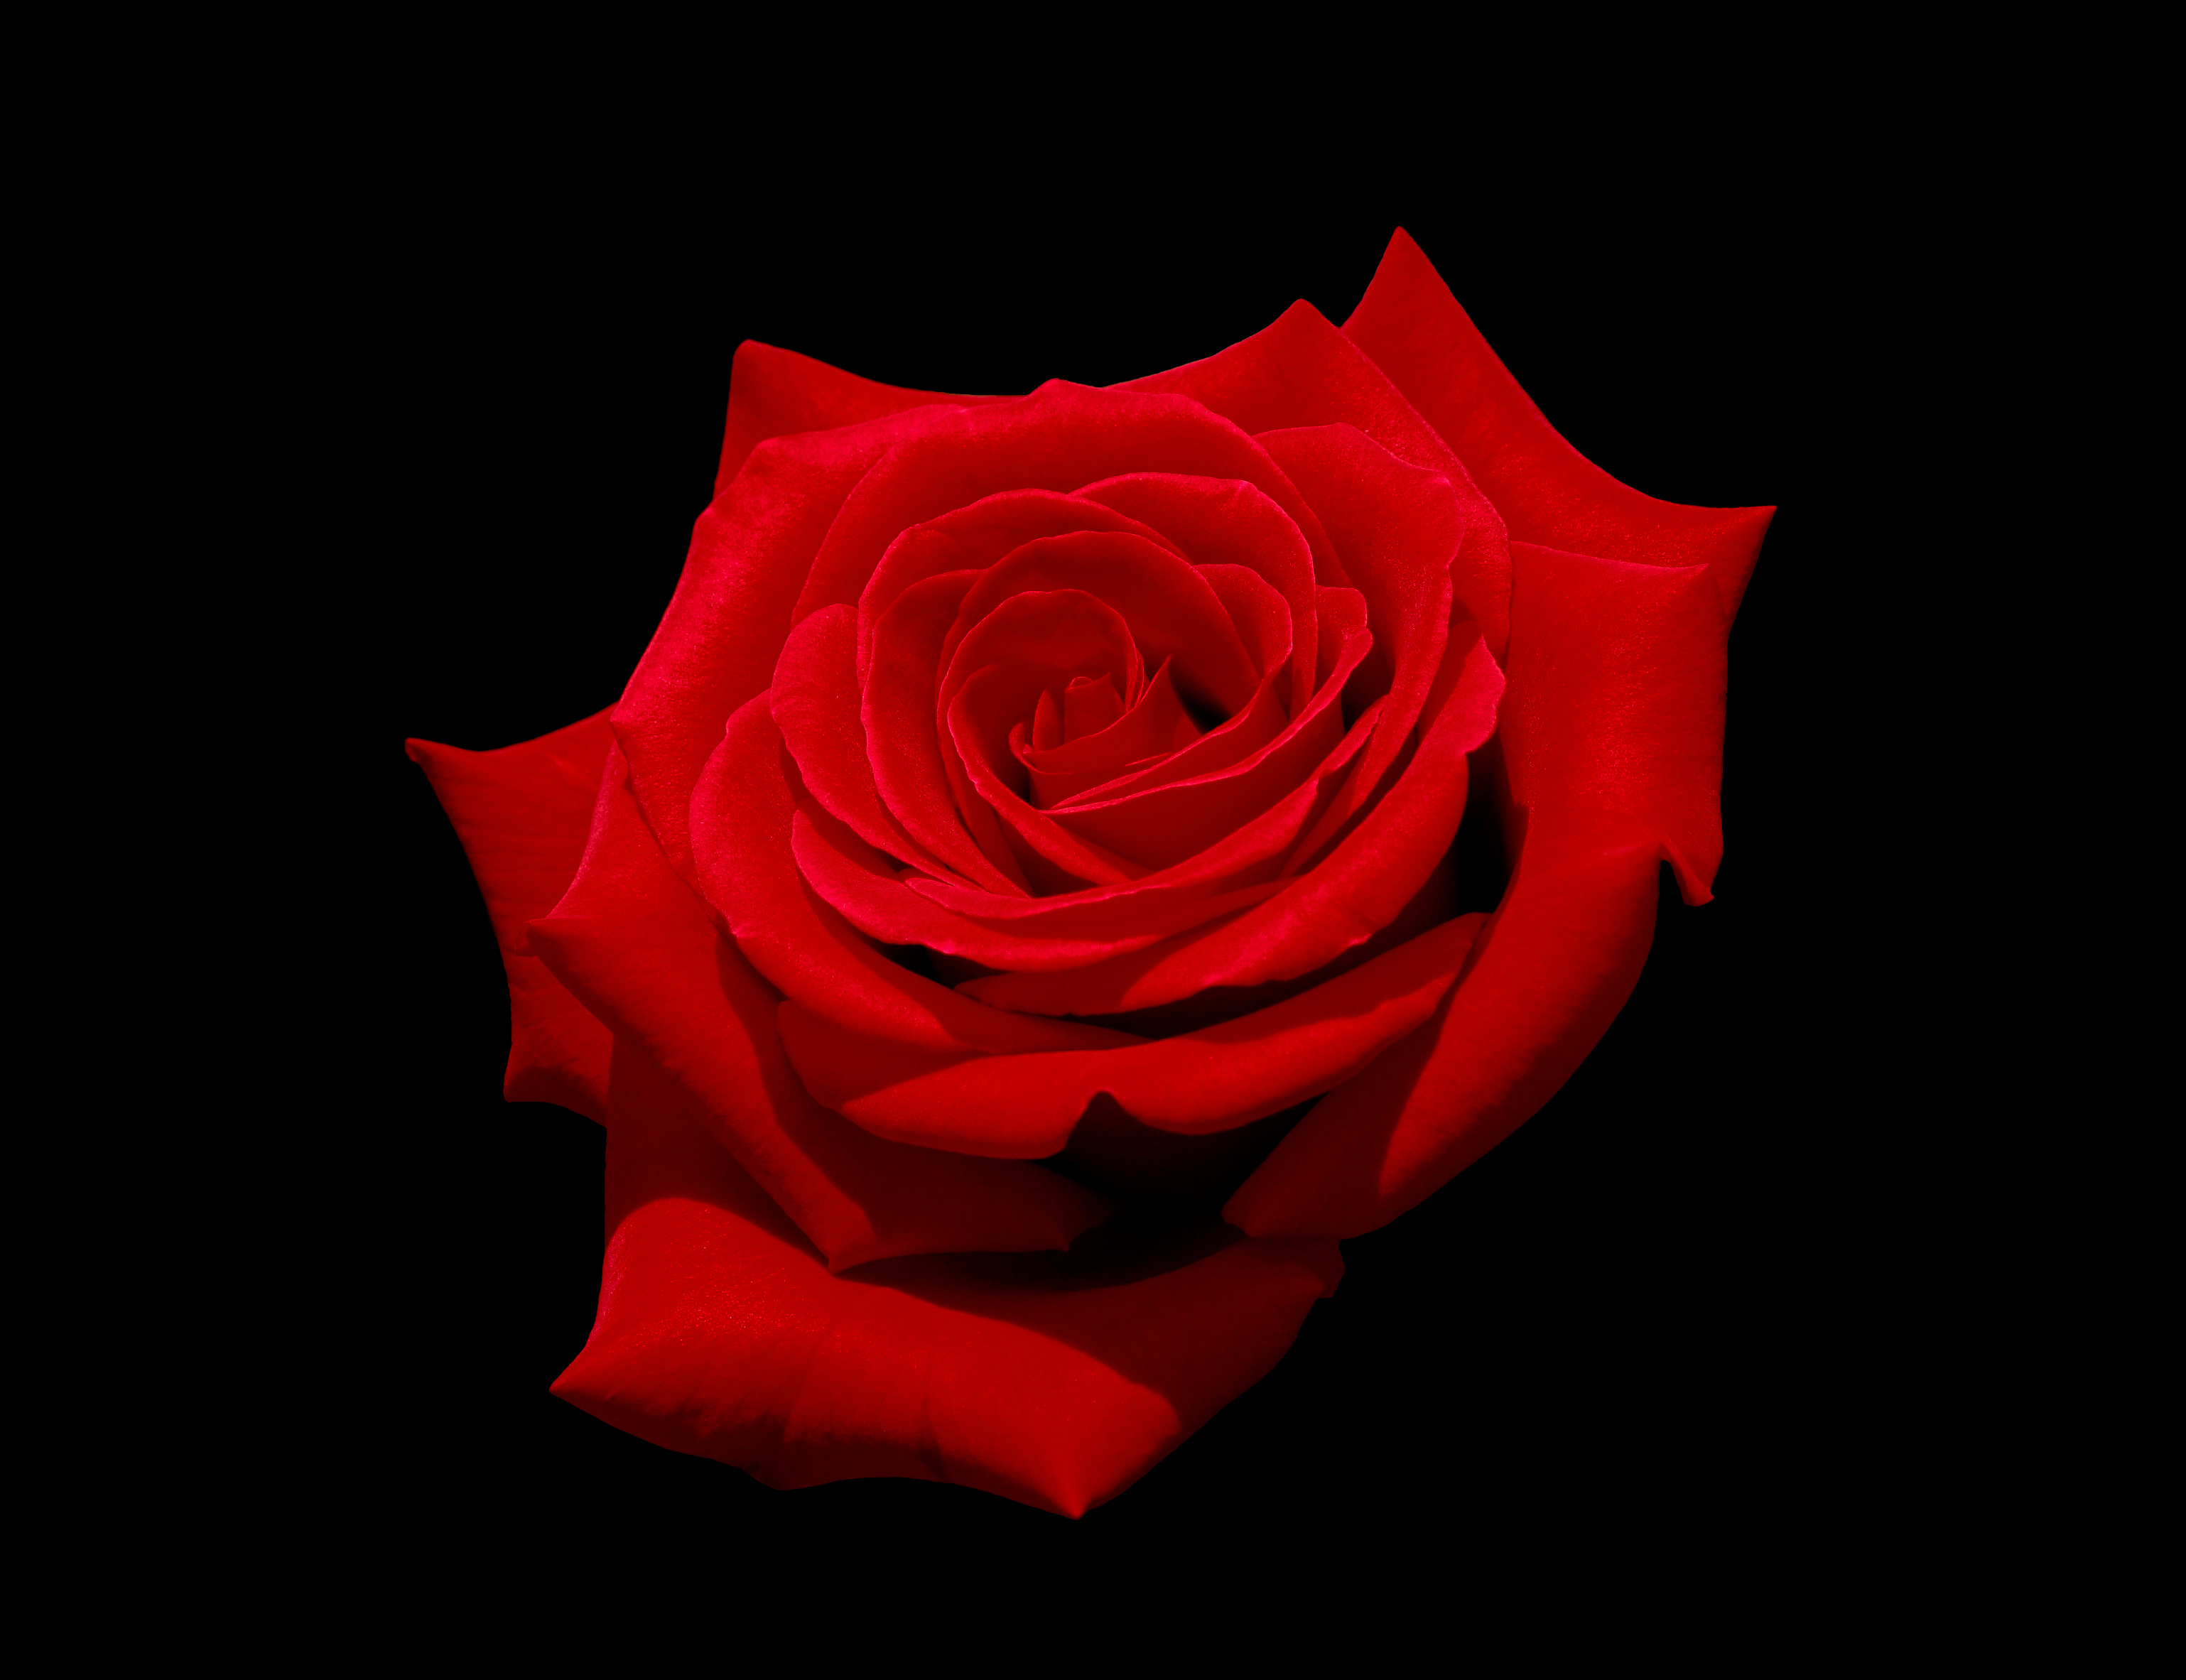 Tuyển hợp hình ảnh hoa hồng đỏ đẹp nhất – Nữ hoàng của các loài hoa - [Kích thước hình ảnh: 3077x2365 px]